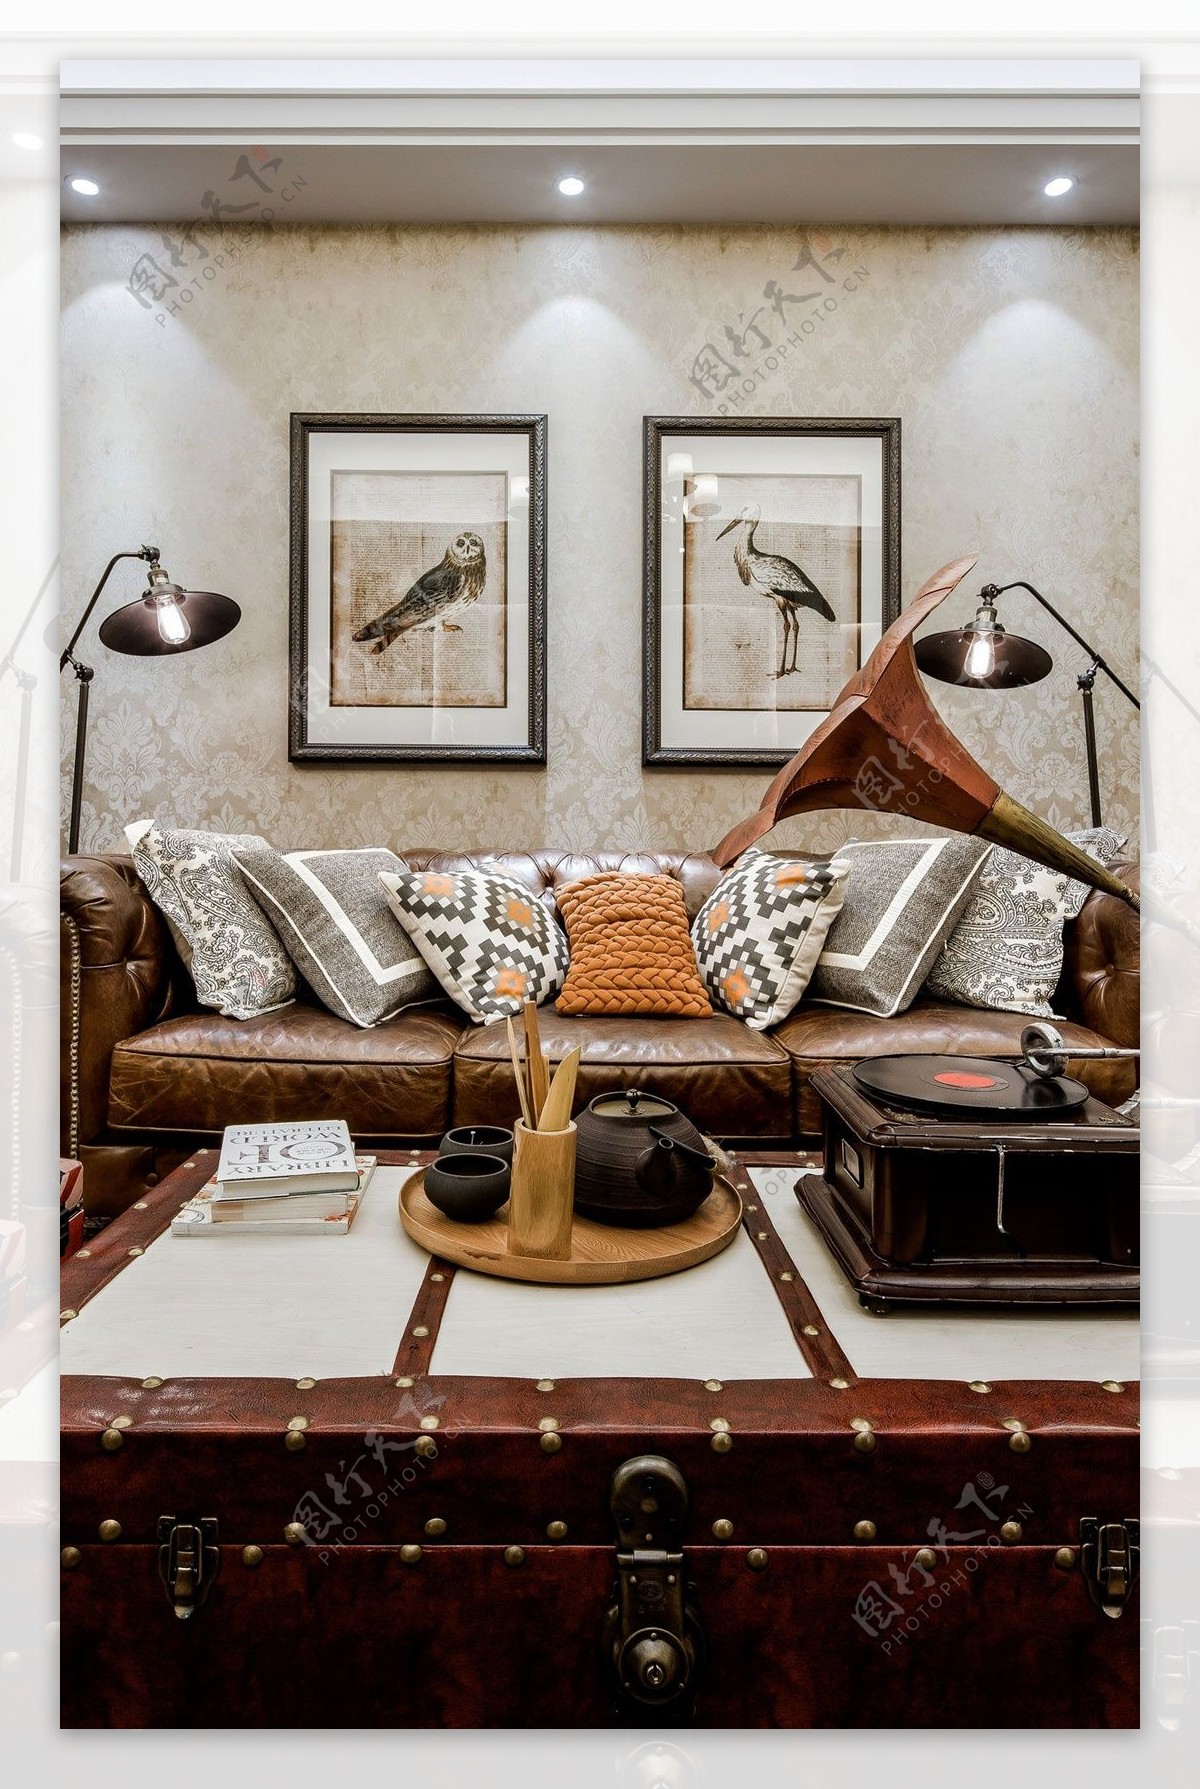 美式复古客厅沙发设计图